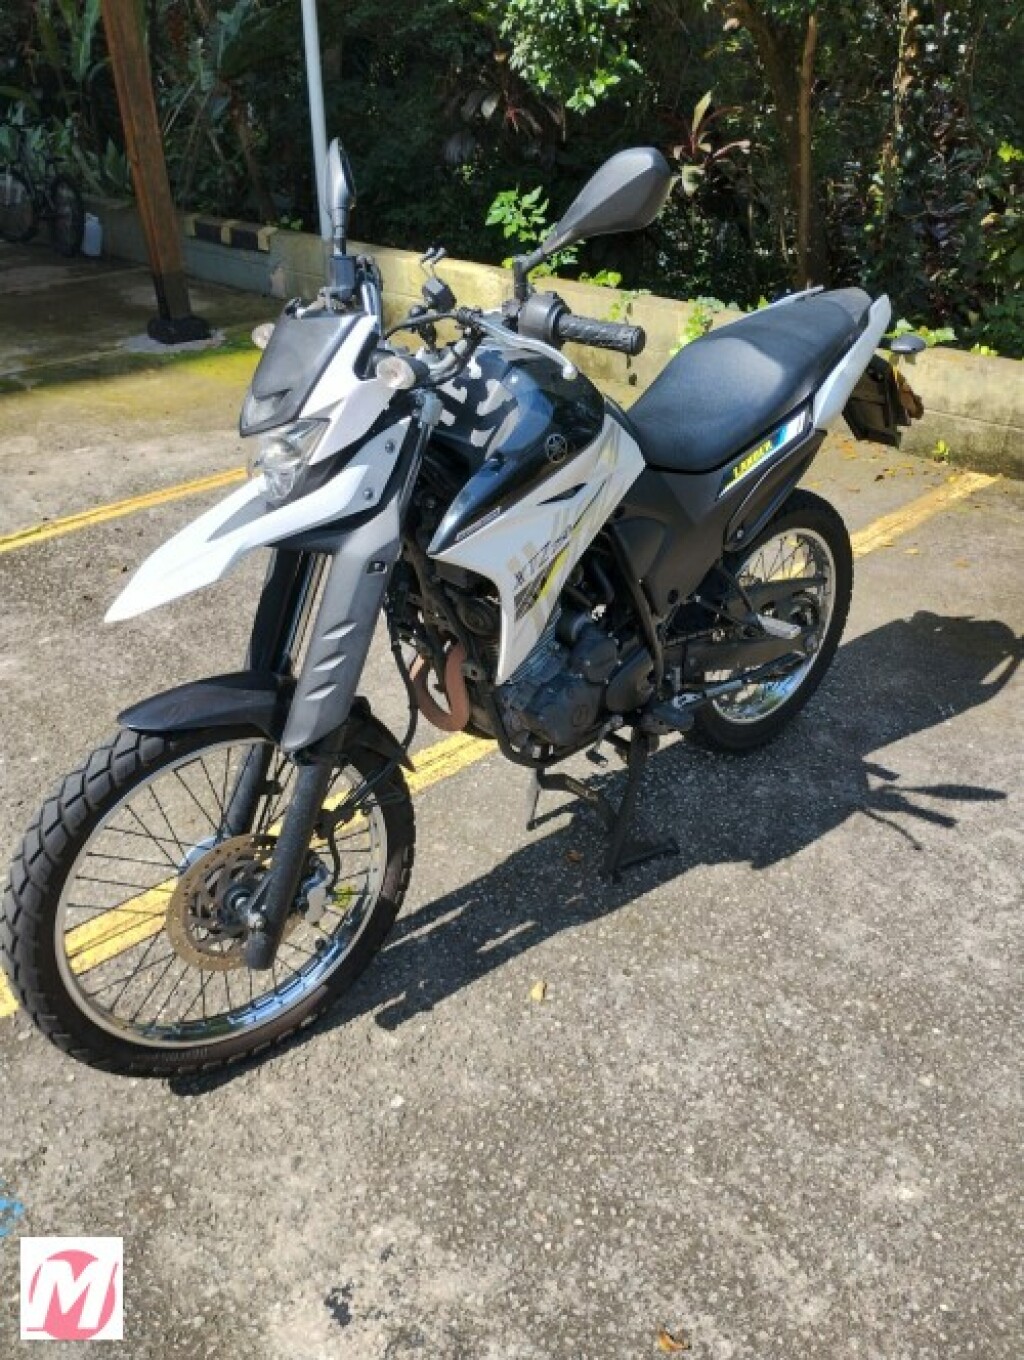 Comprar Motos Yamaha novas e usadas em BARUERI, SP